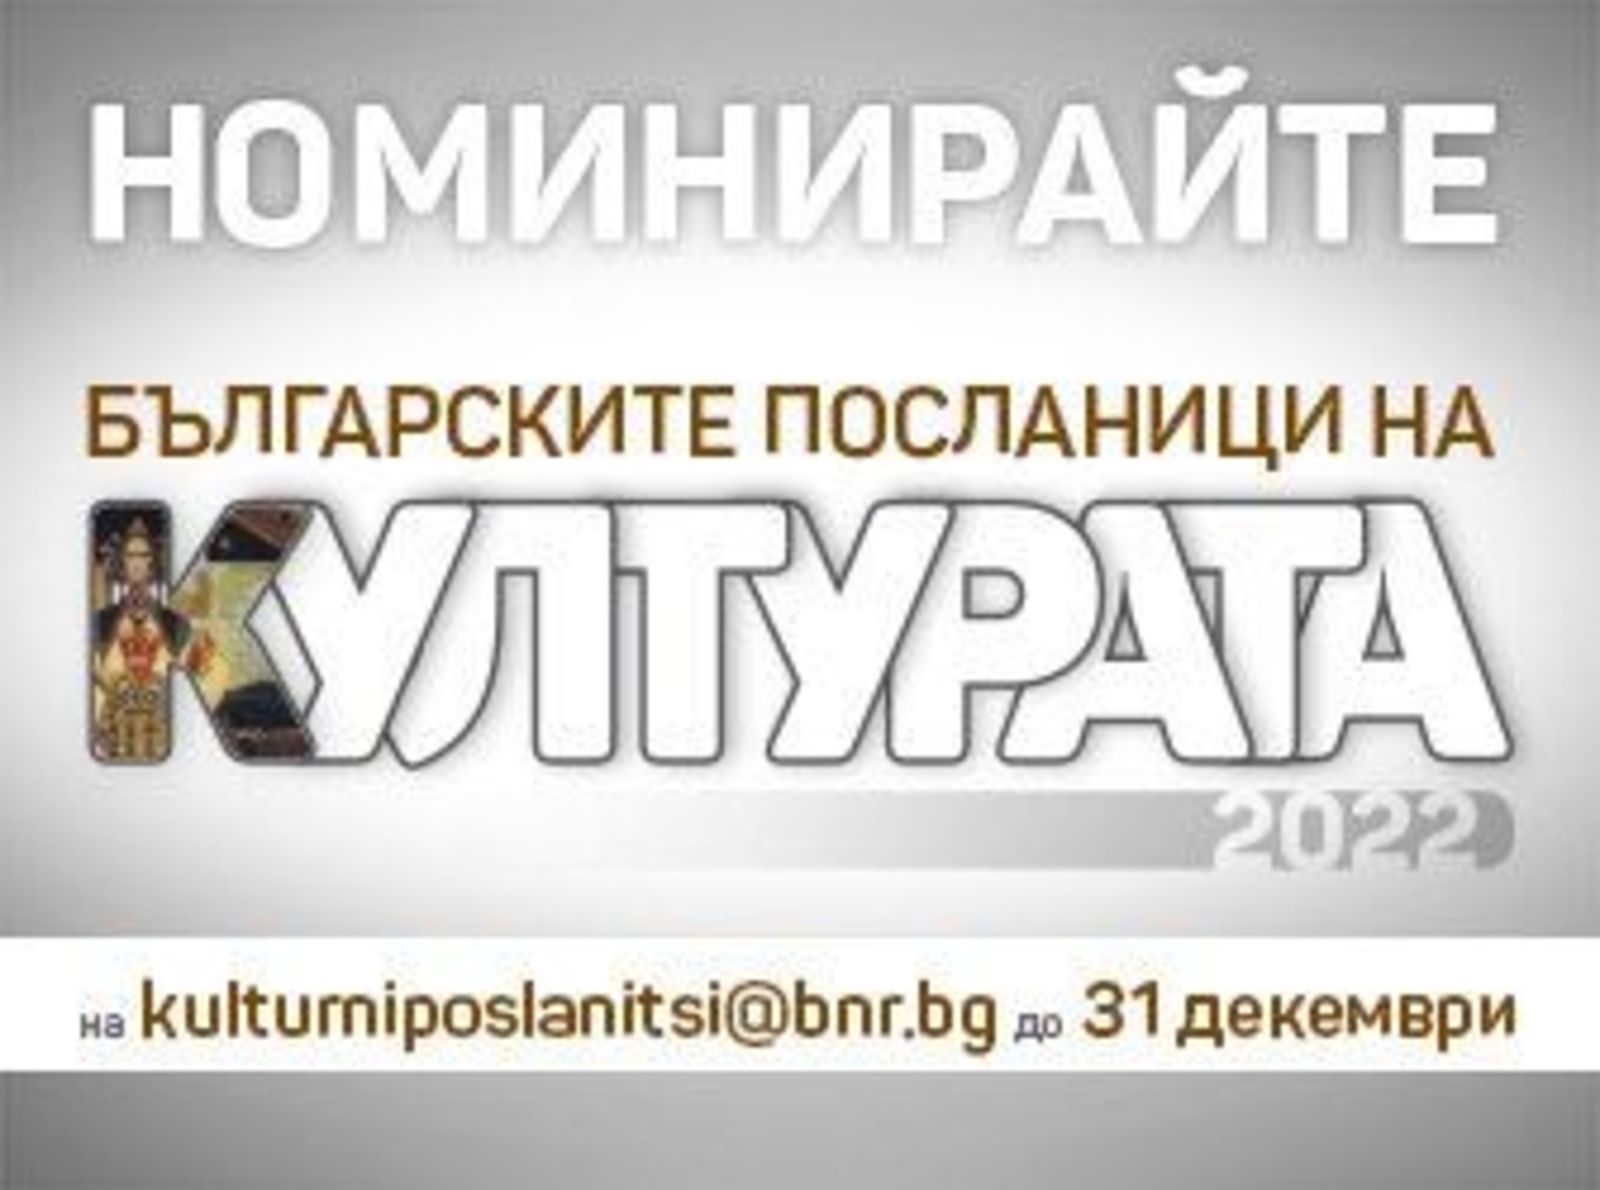 Кампанията на БНР "Българските посланици на културата" се провежда за втора поредна година 